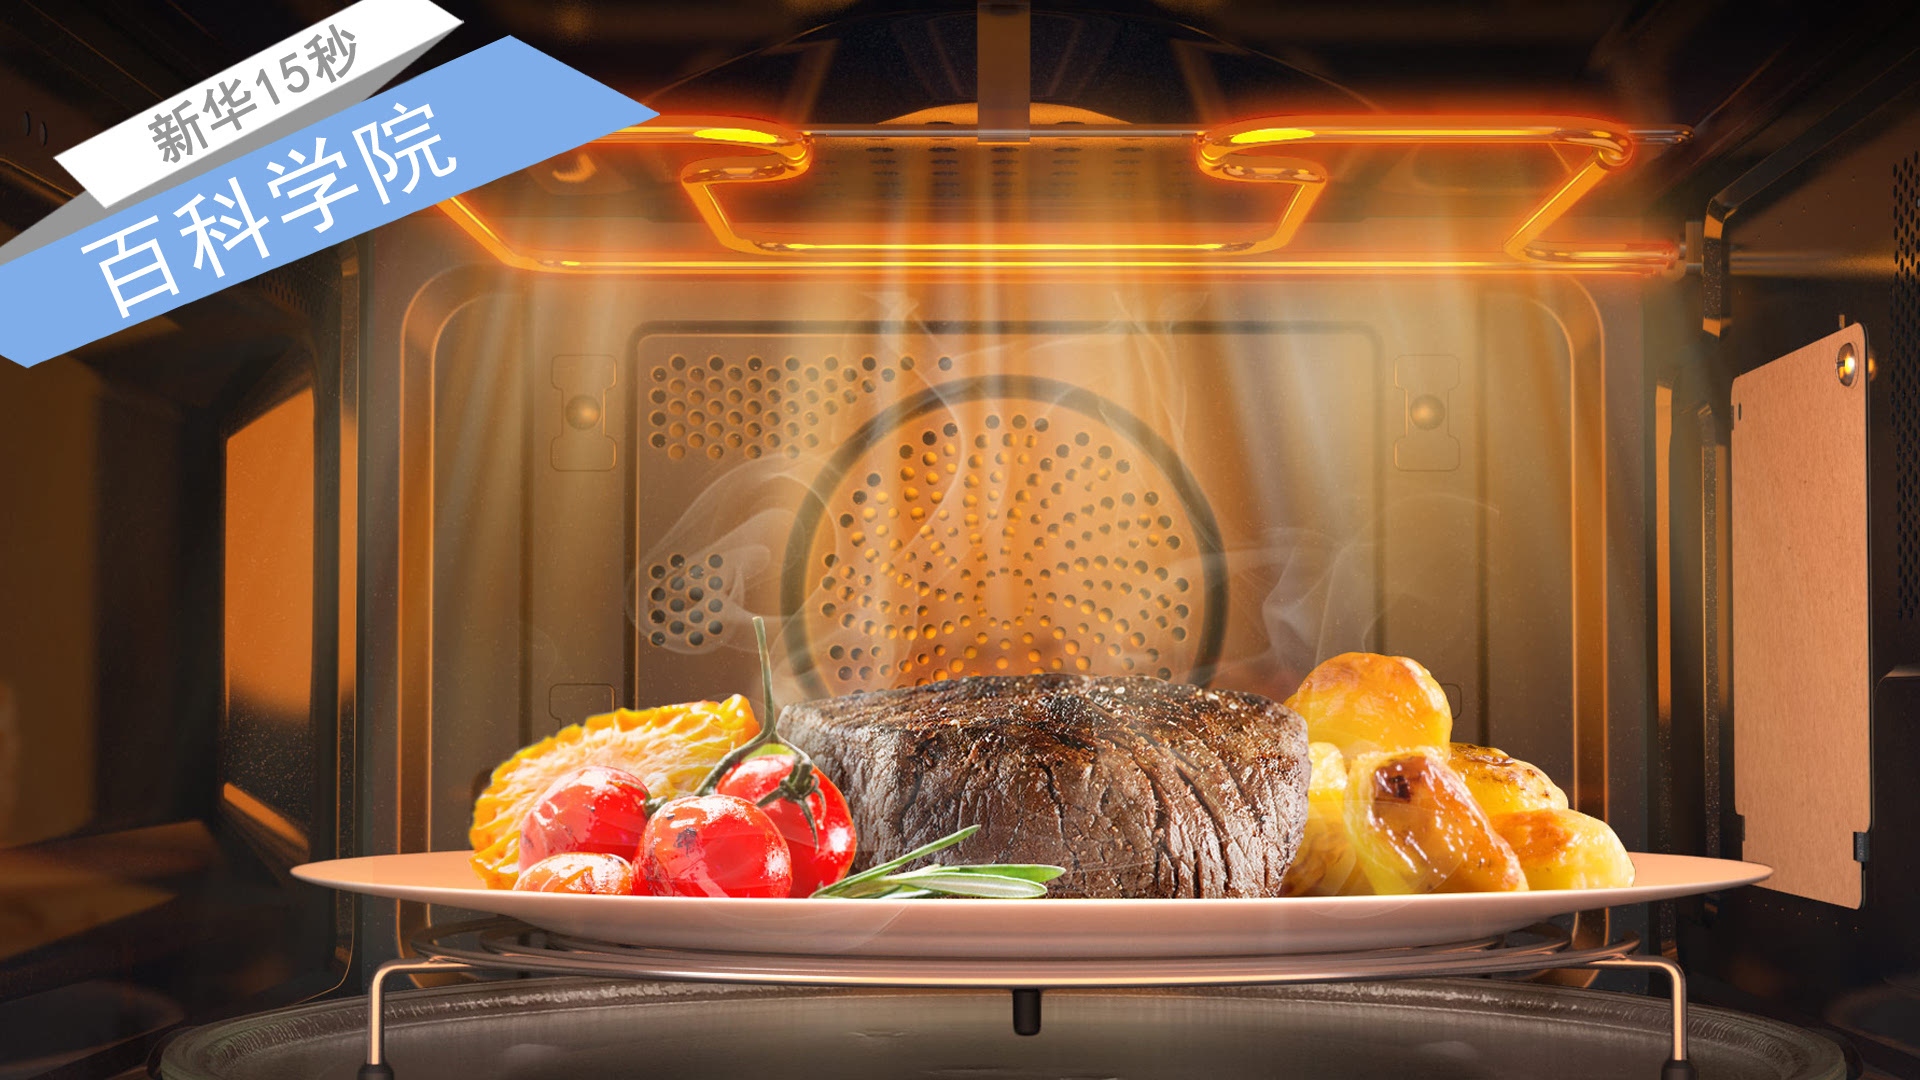 百科学院:微波炉热食物有营养吗?会致癌?